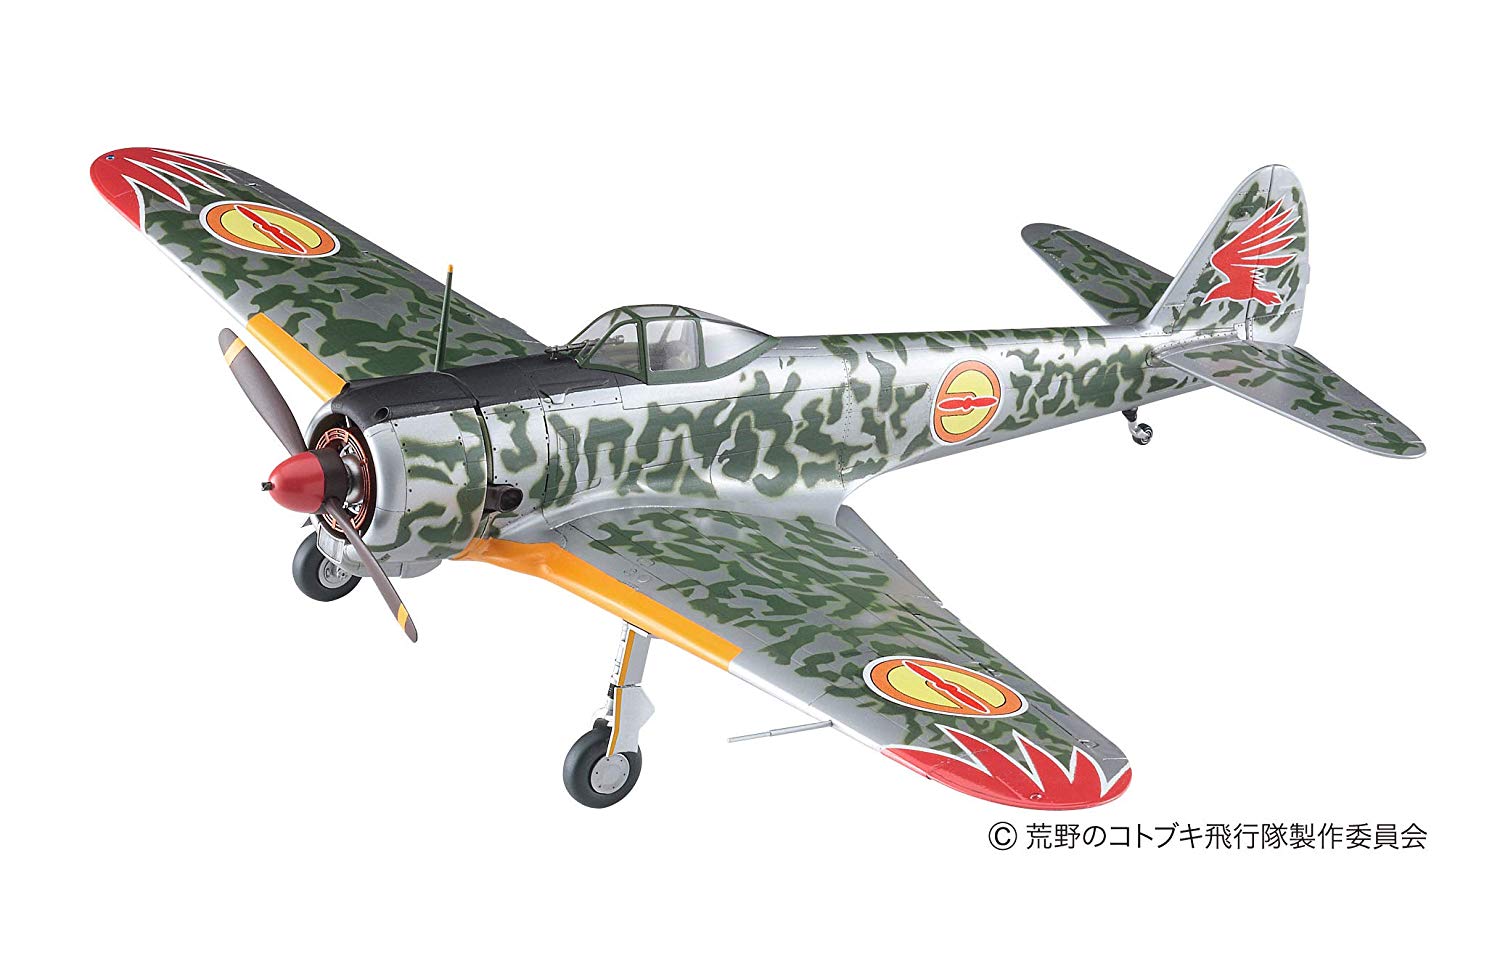 荒野のコトブキ飛行隊『一式戦闘機 隼 I型 キリエ機』1/48 プラモデル-001